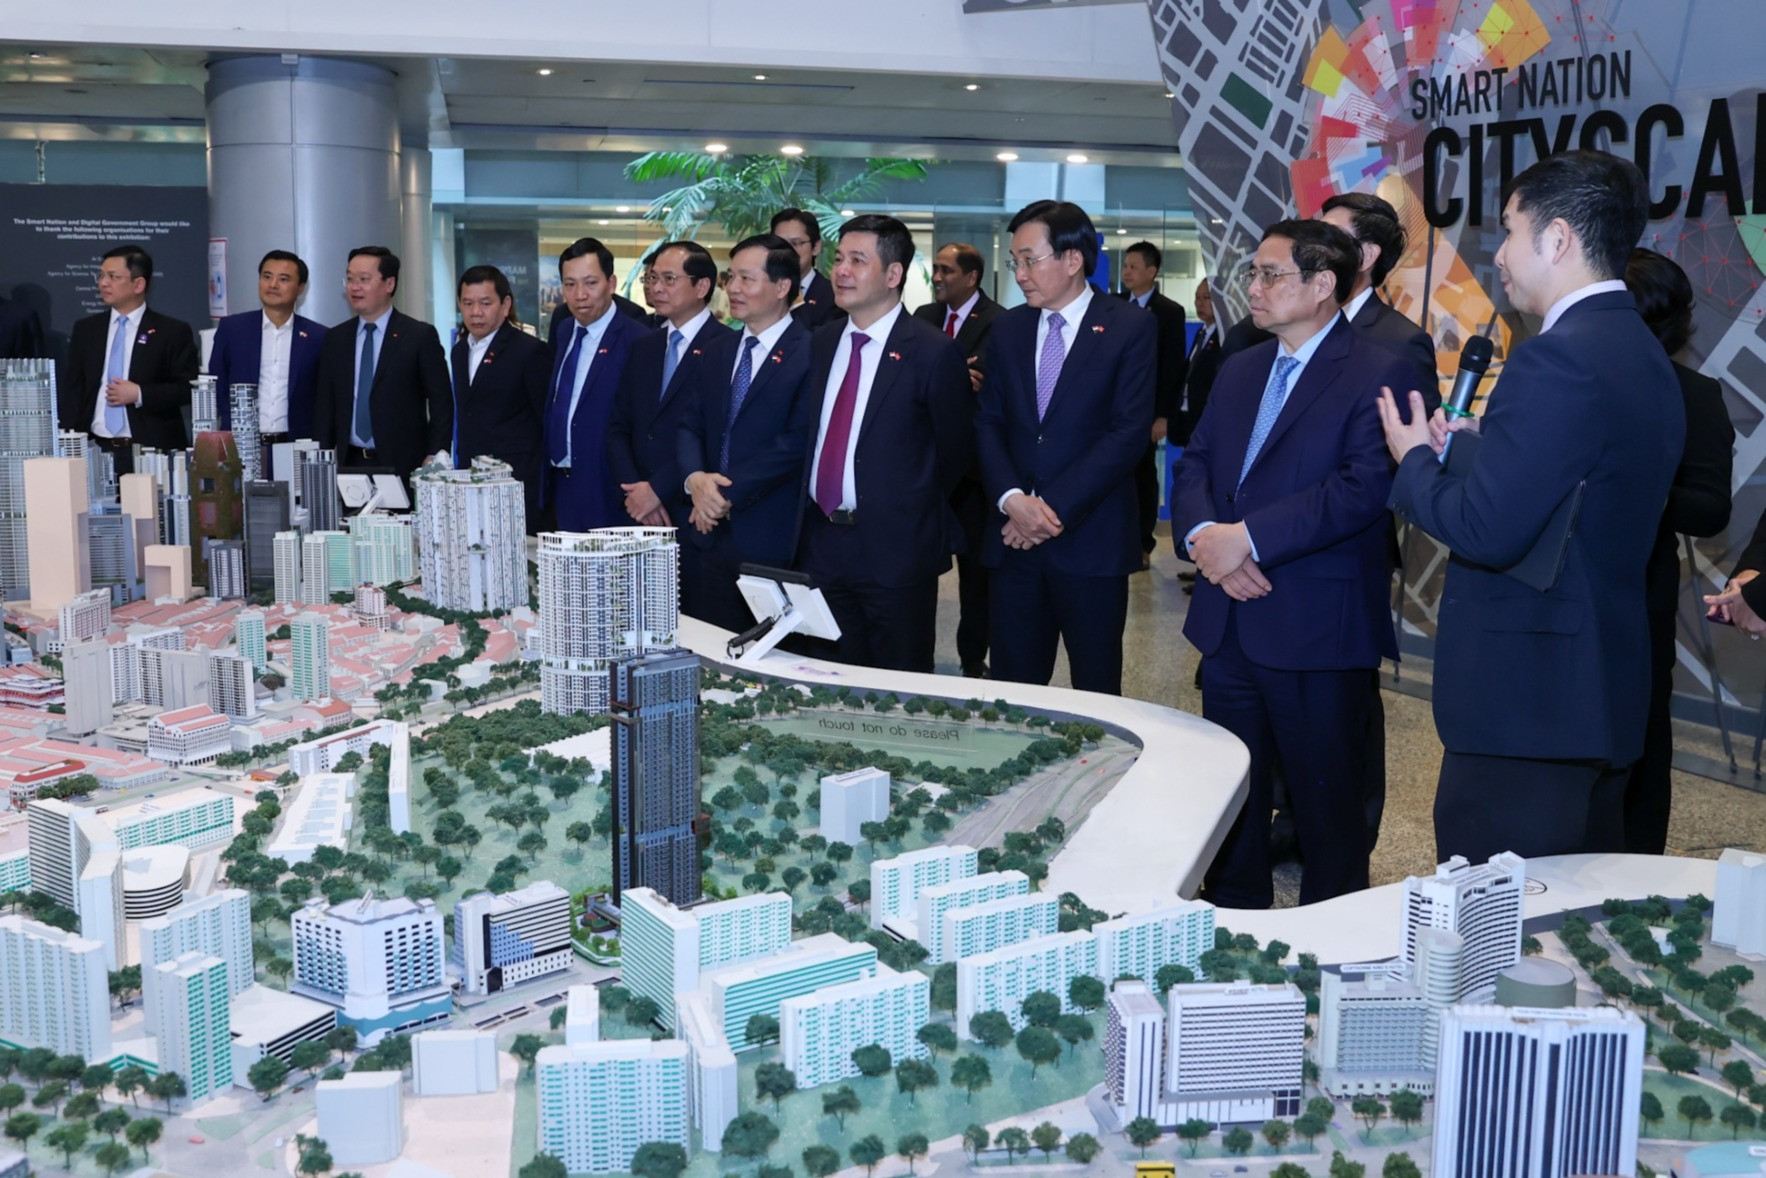 Thủ tướng tìm hiểu bí quyết xây dựng TP thông minh của Singapore